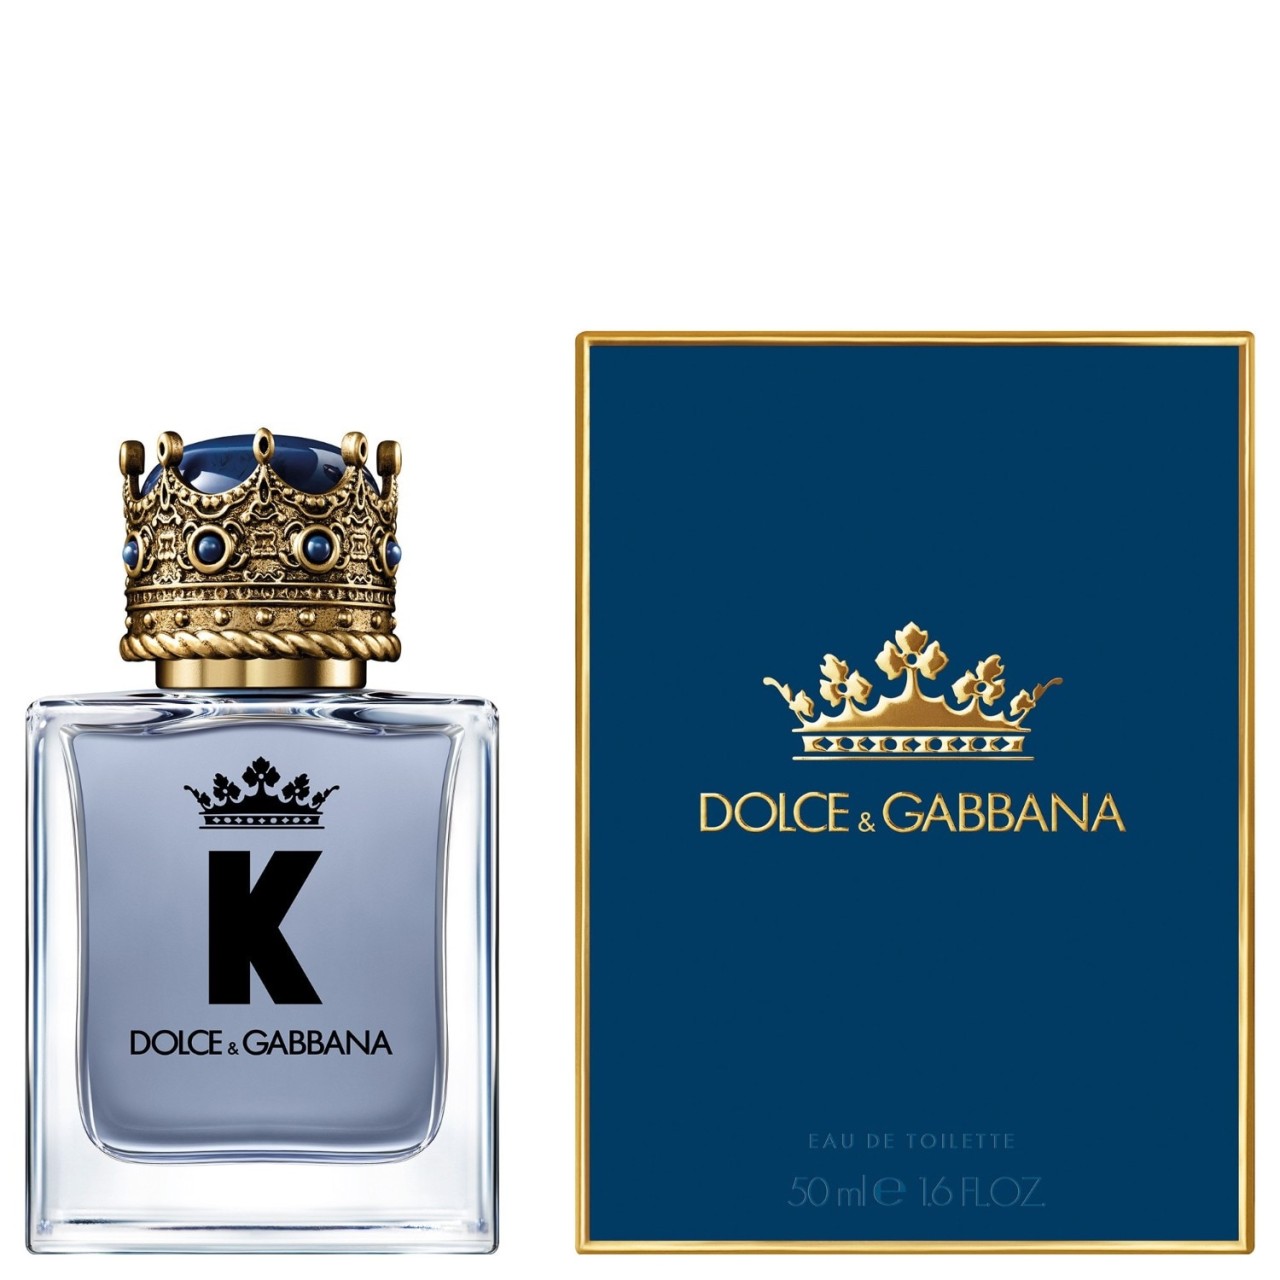 Dolce&Gabbana - K By Dolce Gabbana Eau de Toilette -  50 ml